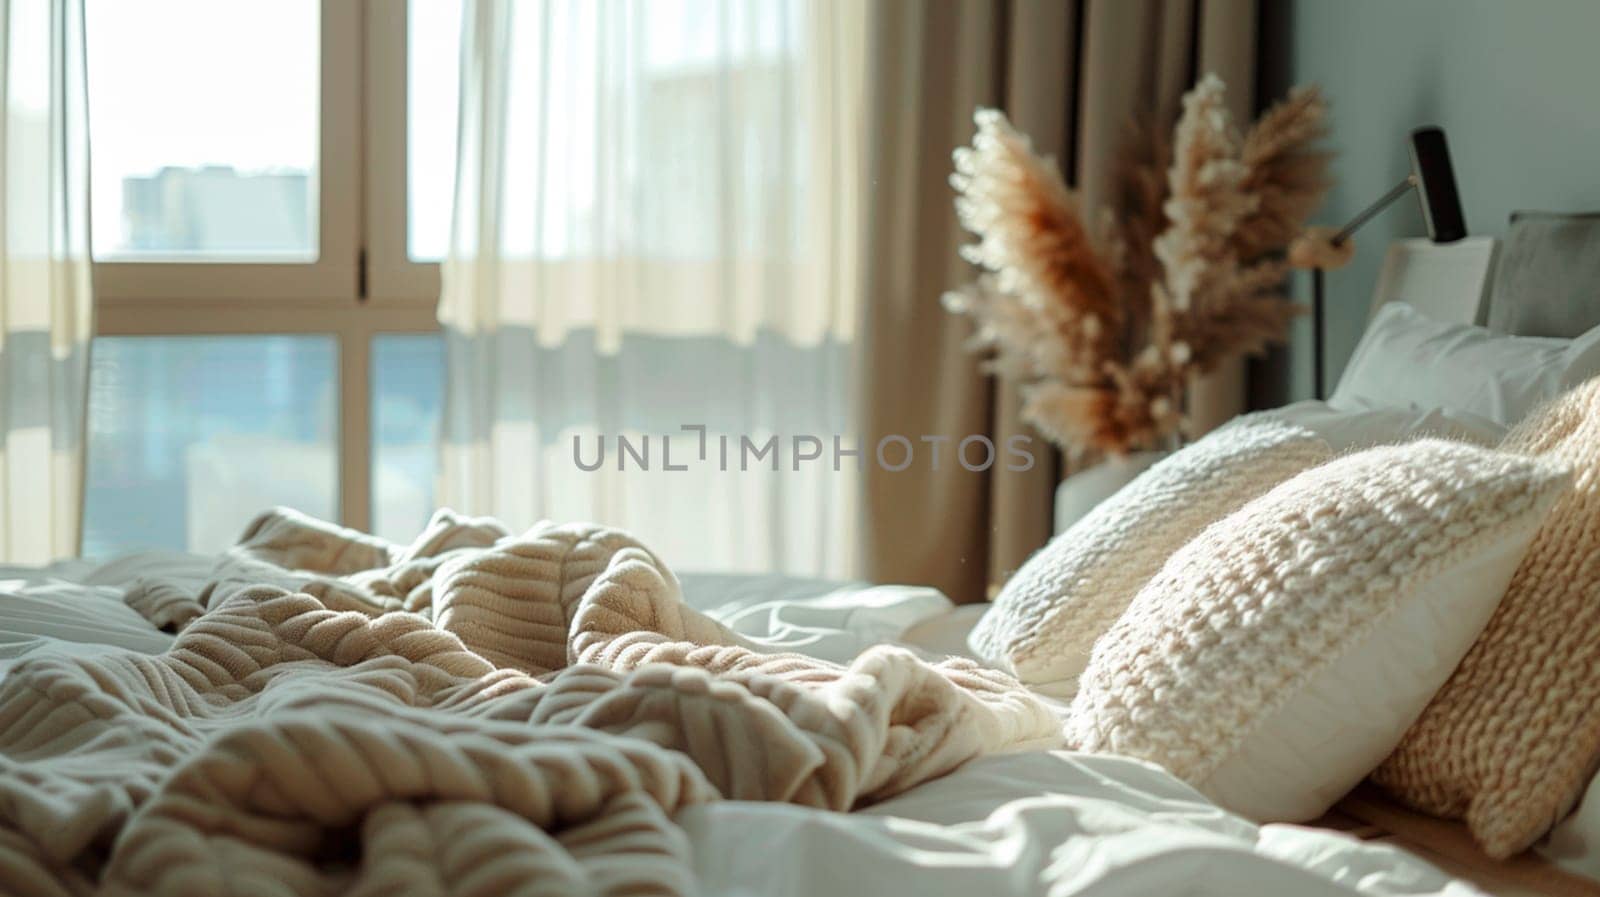 Big bed close up. Selective focus. by yanadjana